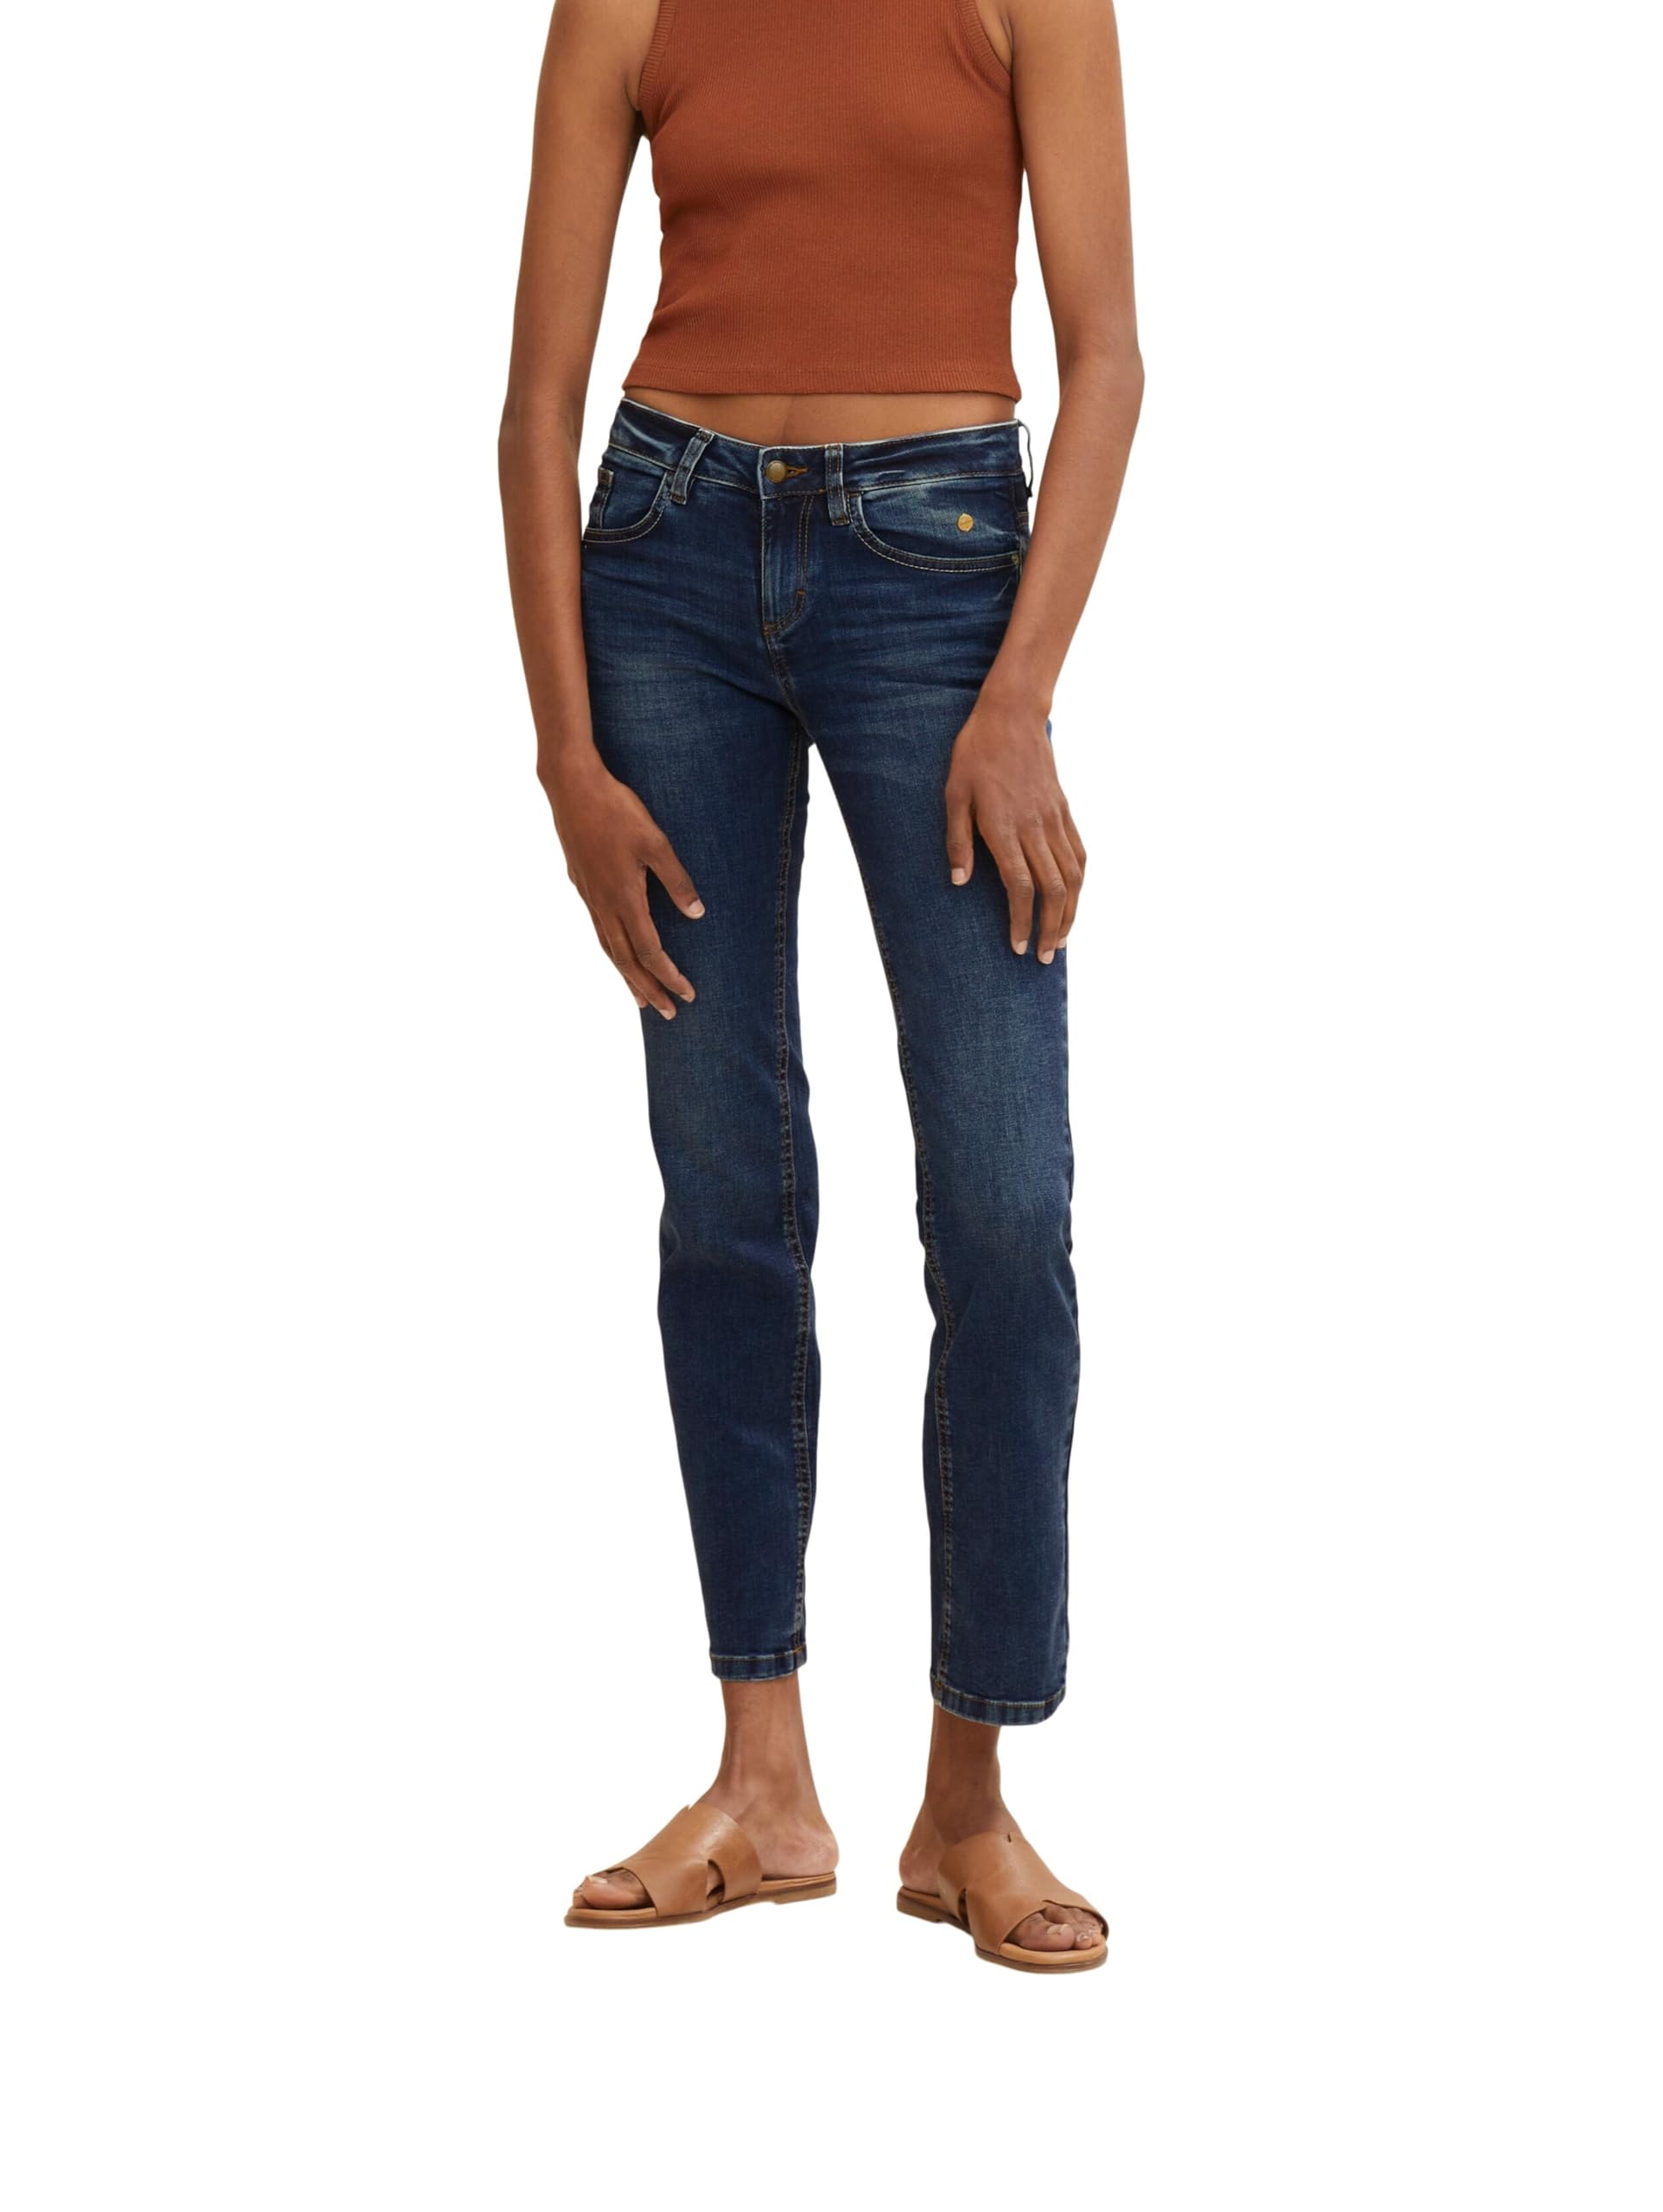 TOM TAILOR Damen Alexa Straight Jeans, 10281 - Mid Stone Wash Denim, 32W / 32L